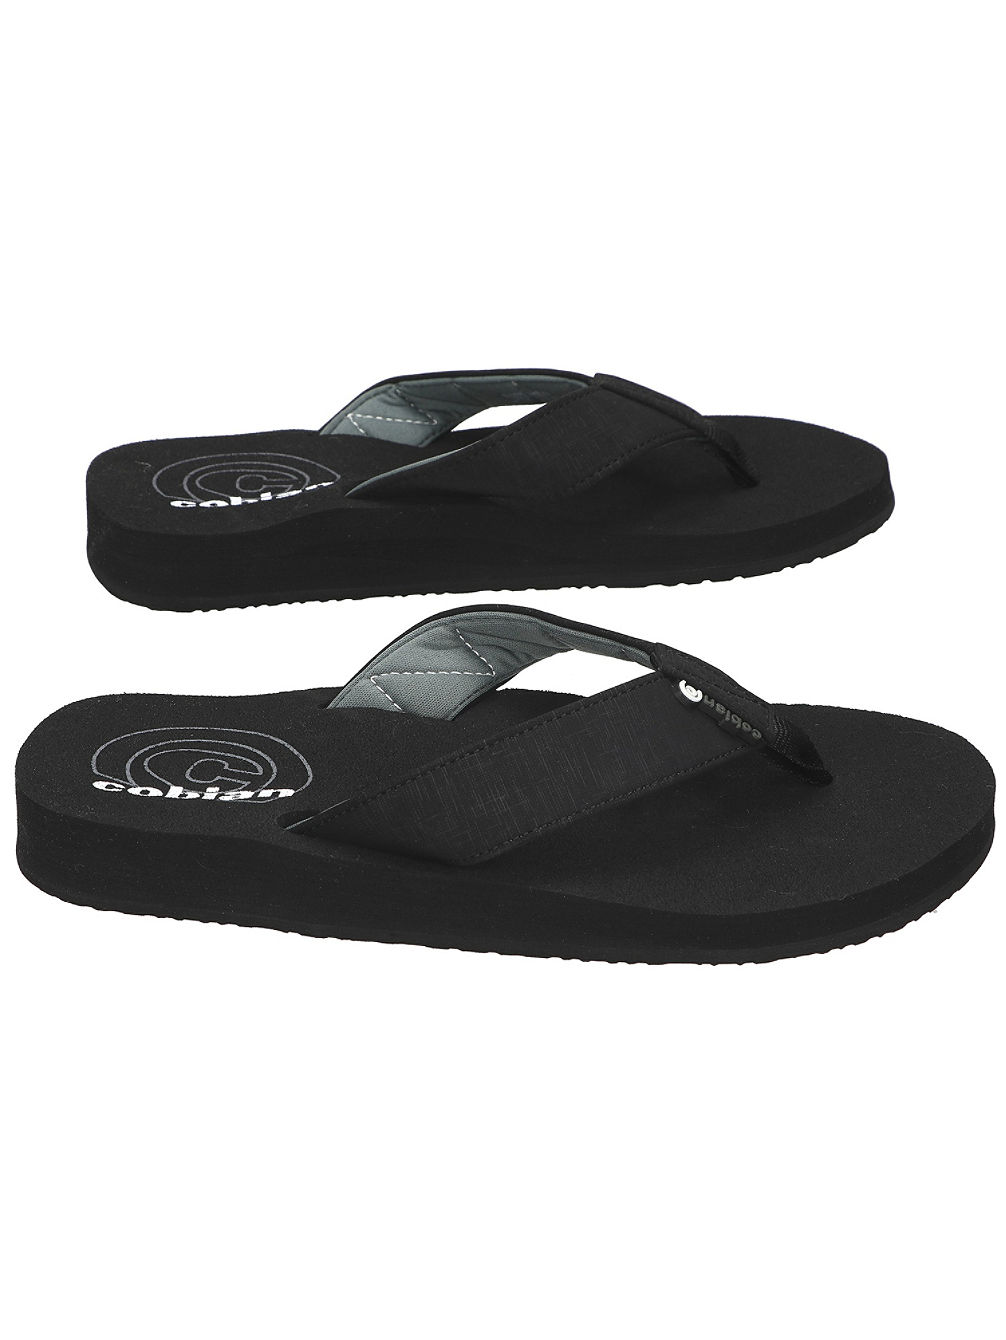 Floater Sandals